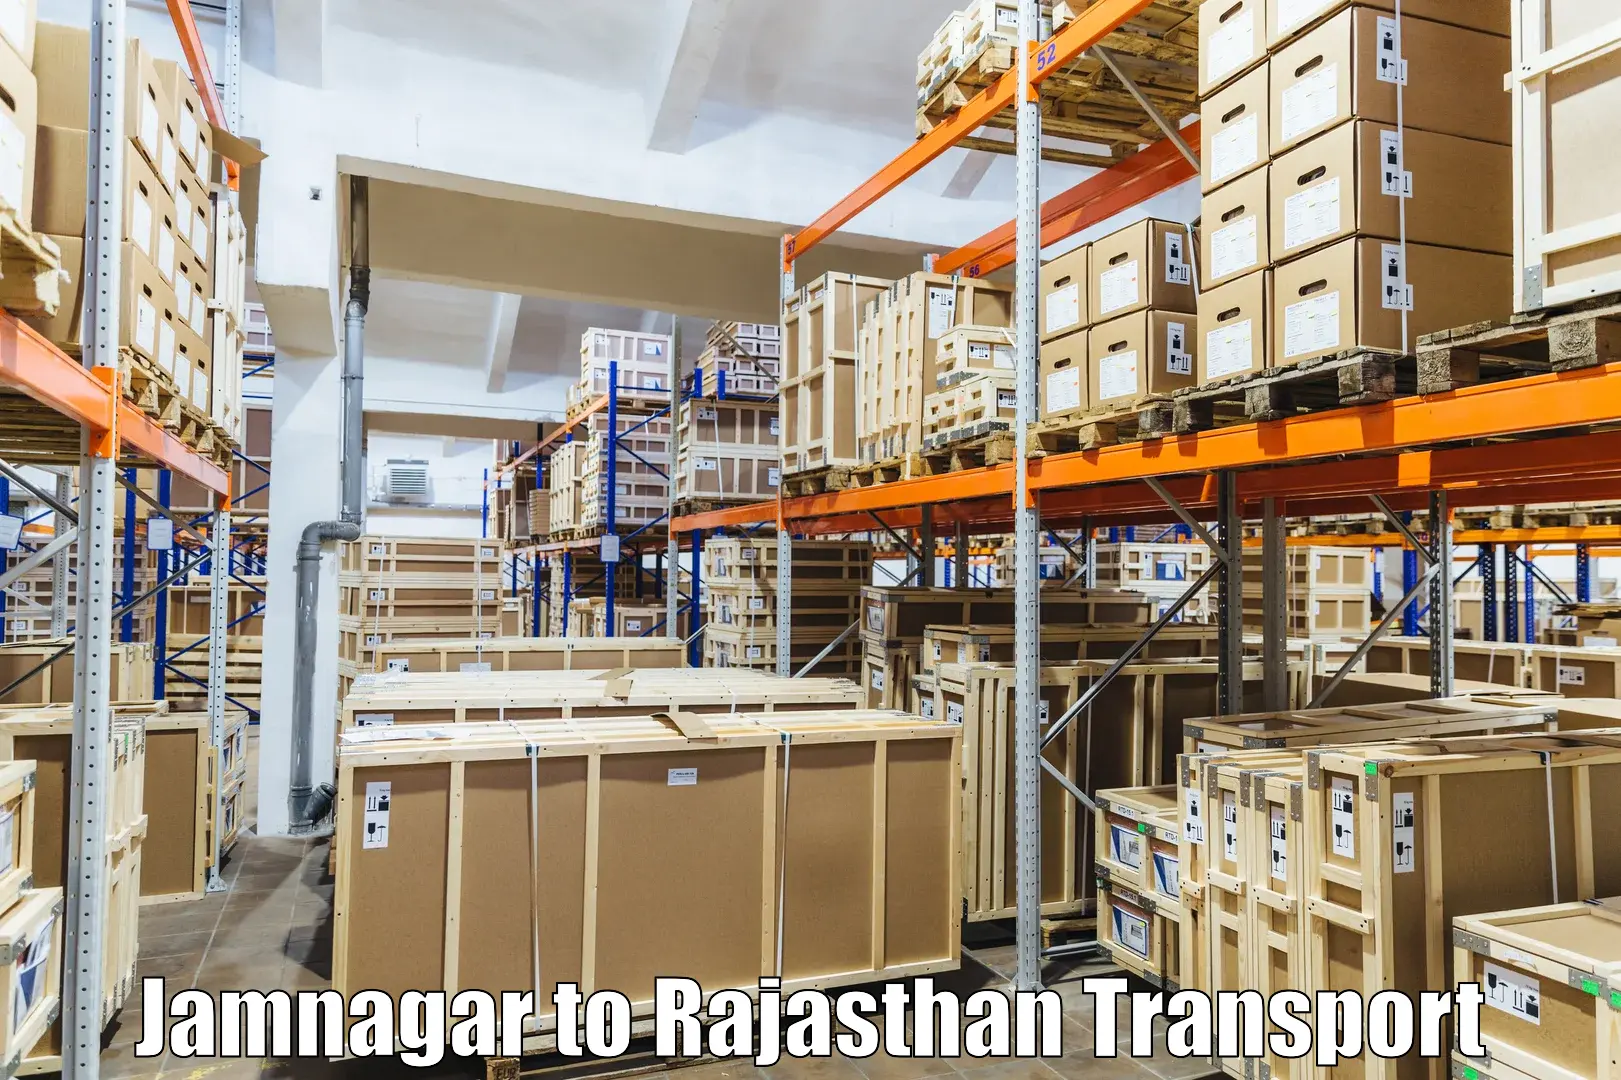 Interstate transport services Jamnagar to Pratapgarh Rajasthan